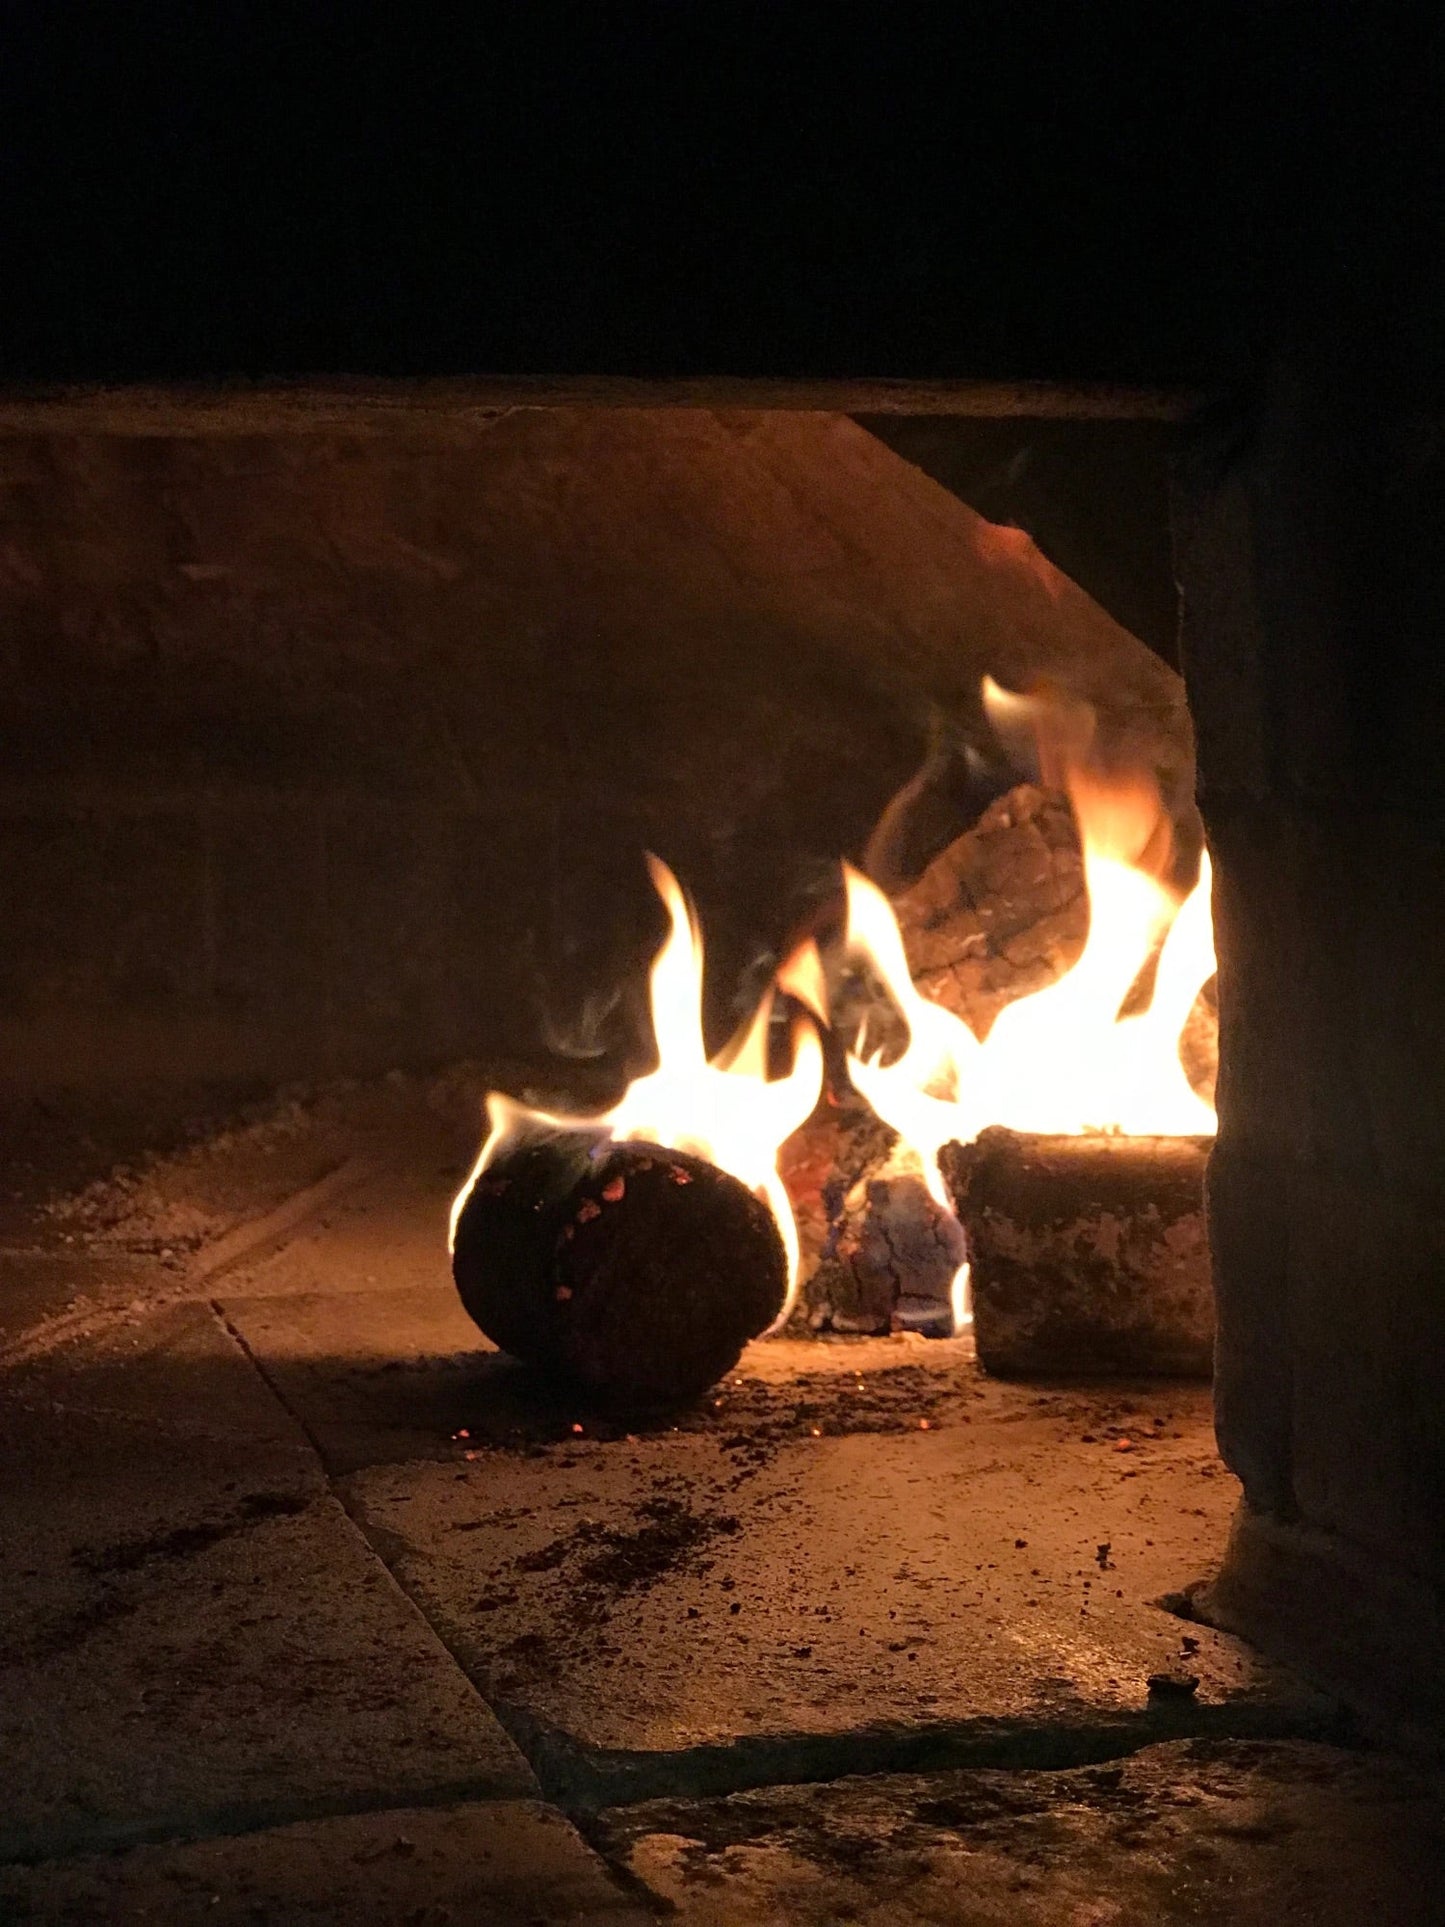 Firewood Briquettes - 10 x 15kg Bags - SYDNEY PICK UP